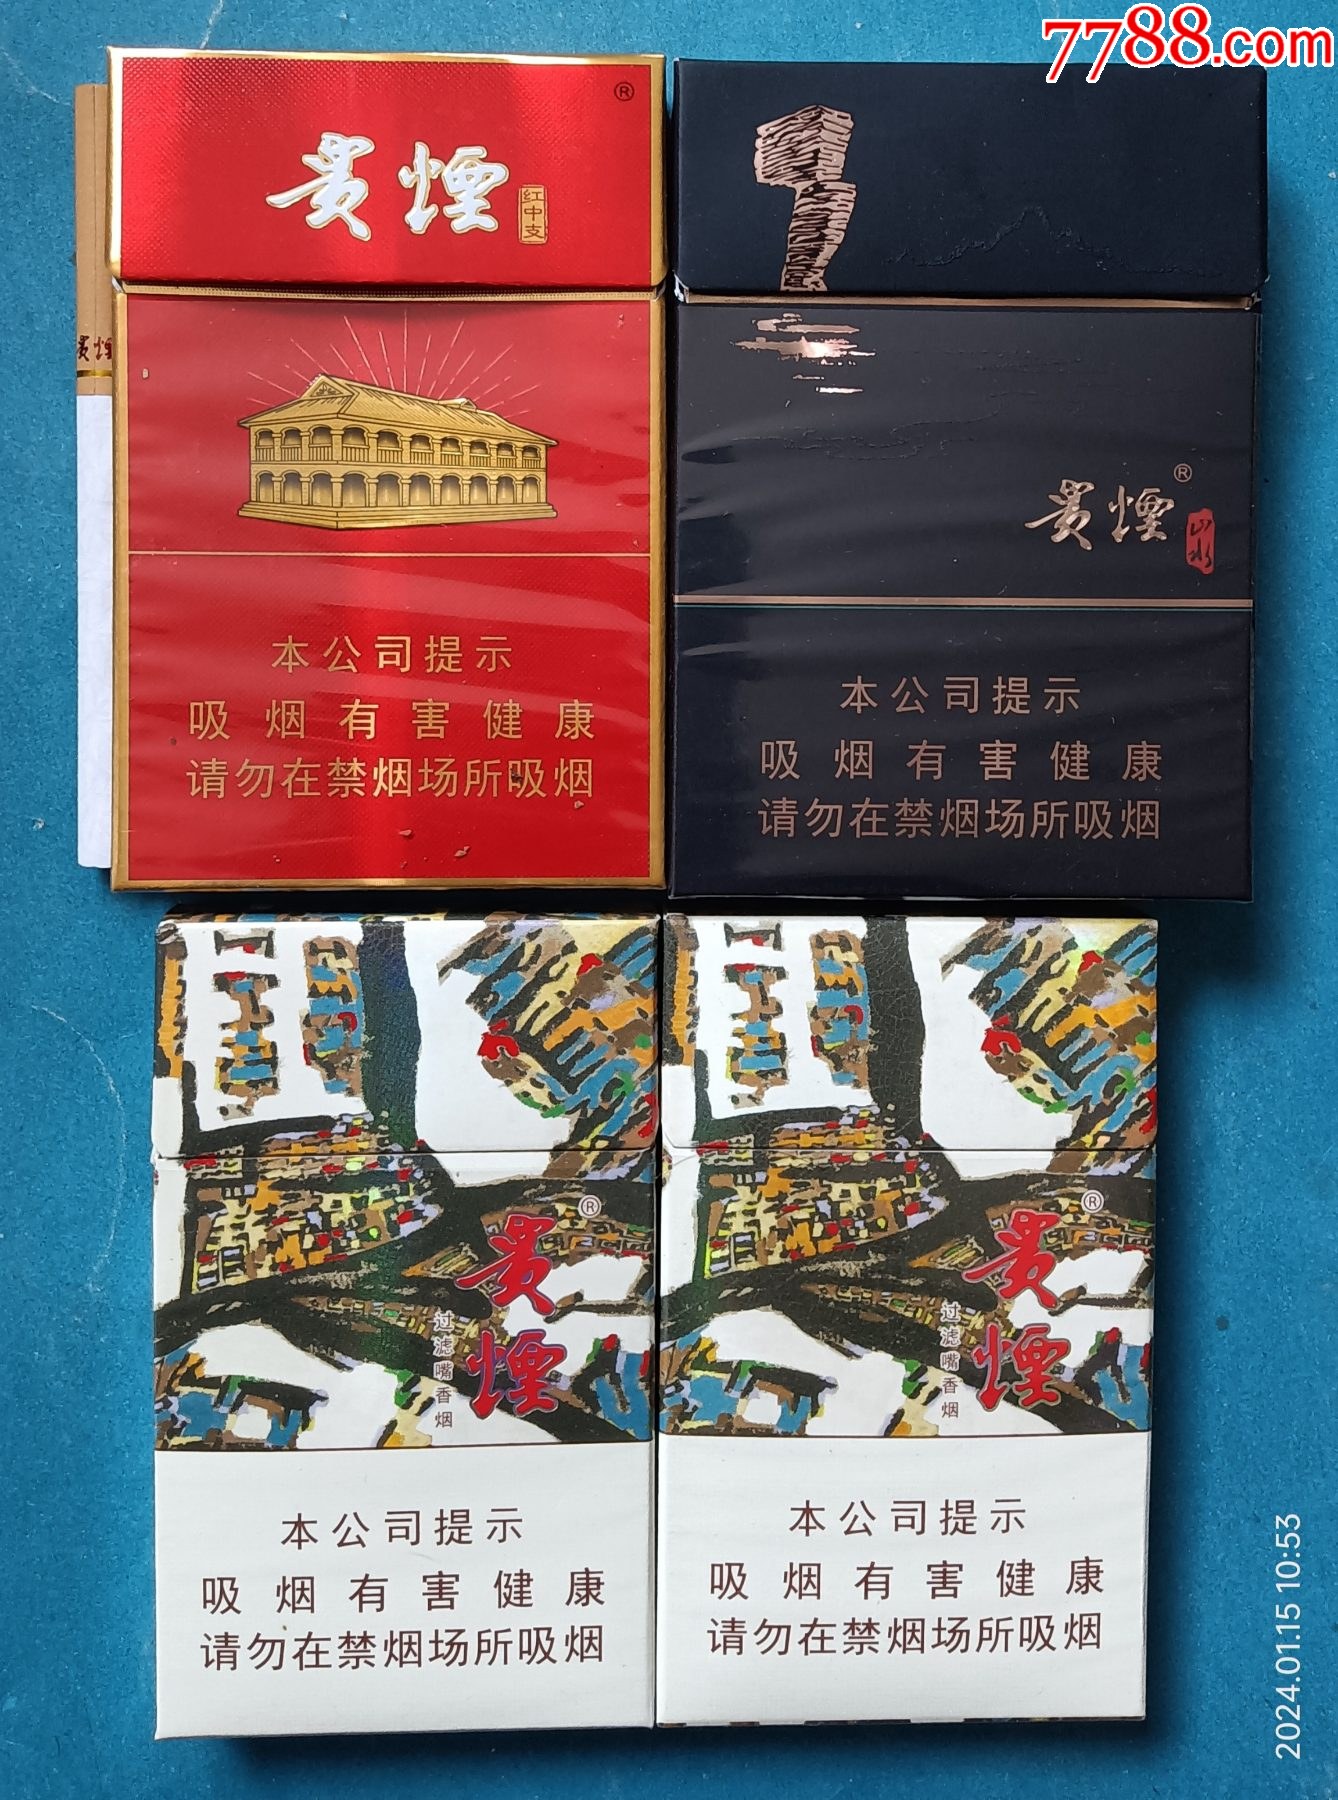 红中支(含1烟),山水,萃(尽早,劝阻),贵州中烟工业有限责任公司